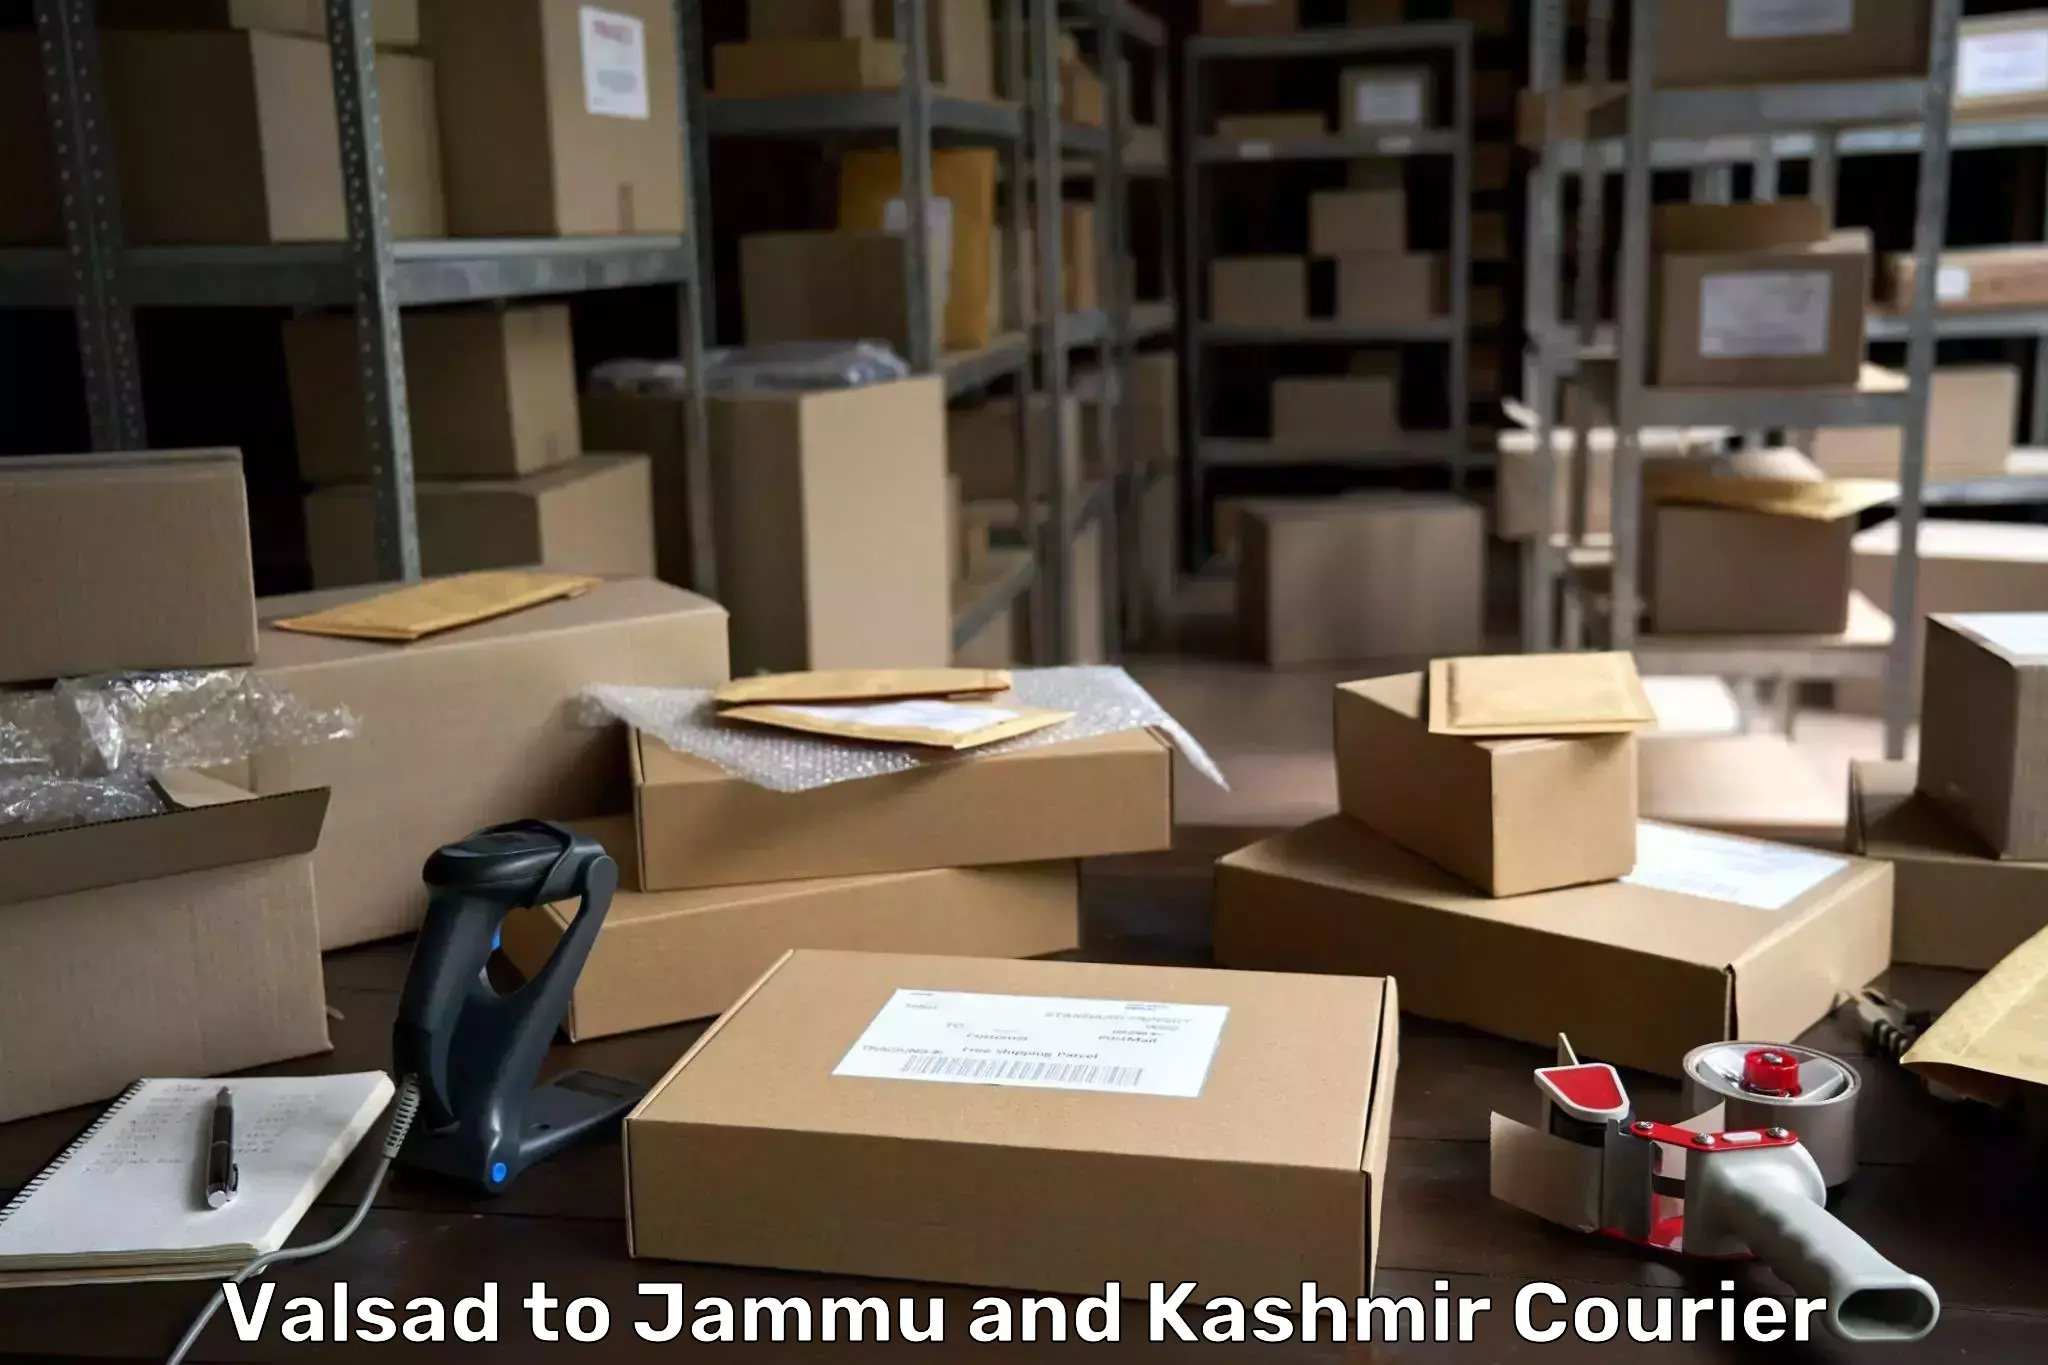 24-hour delivery options Valsad to Srinagar Kashmir